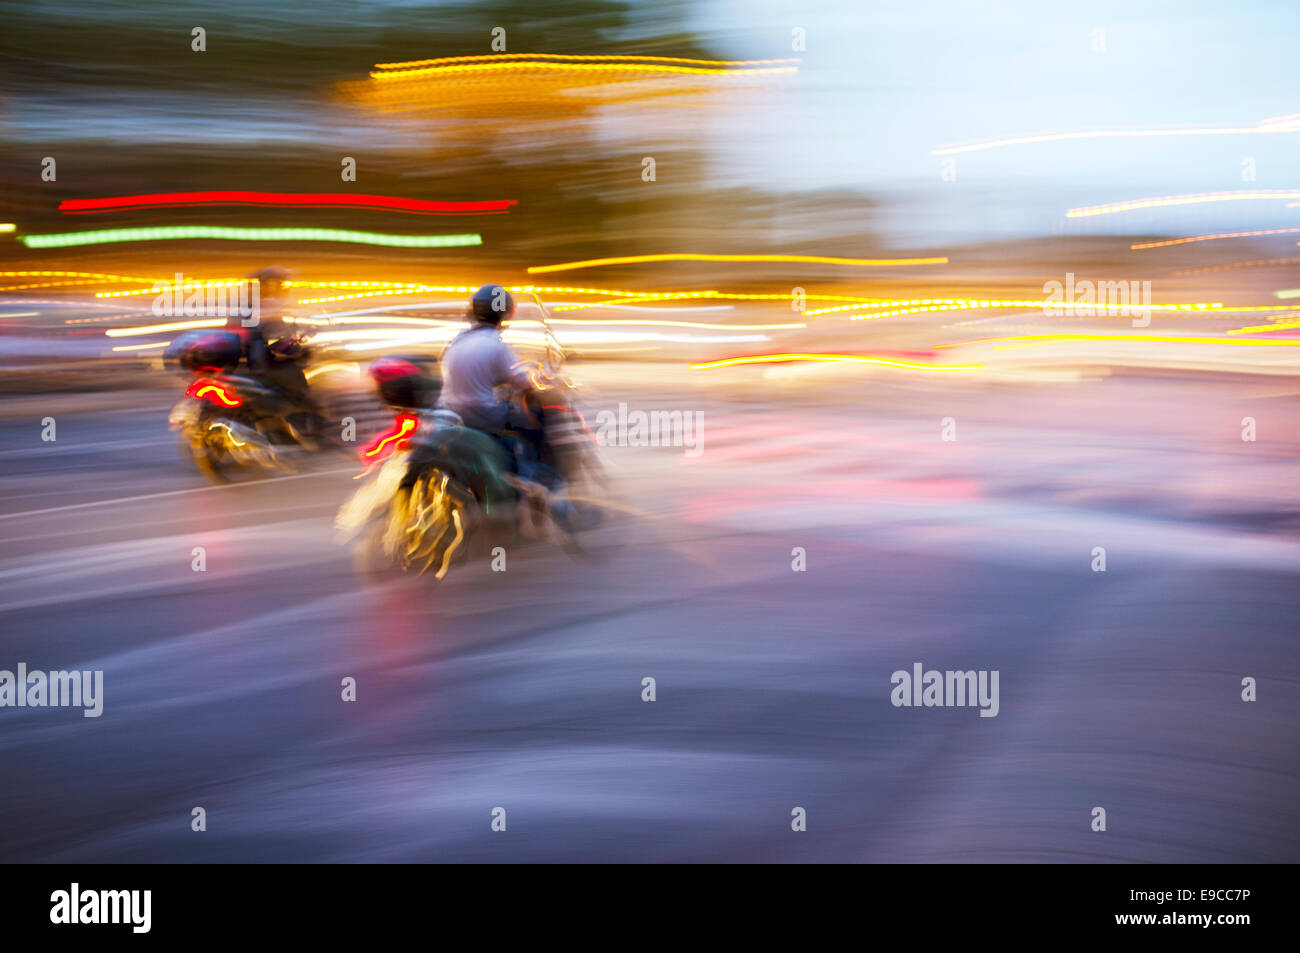 Imagen borrosa abstracta de un scooter de conducir de noche. Foto de stock